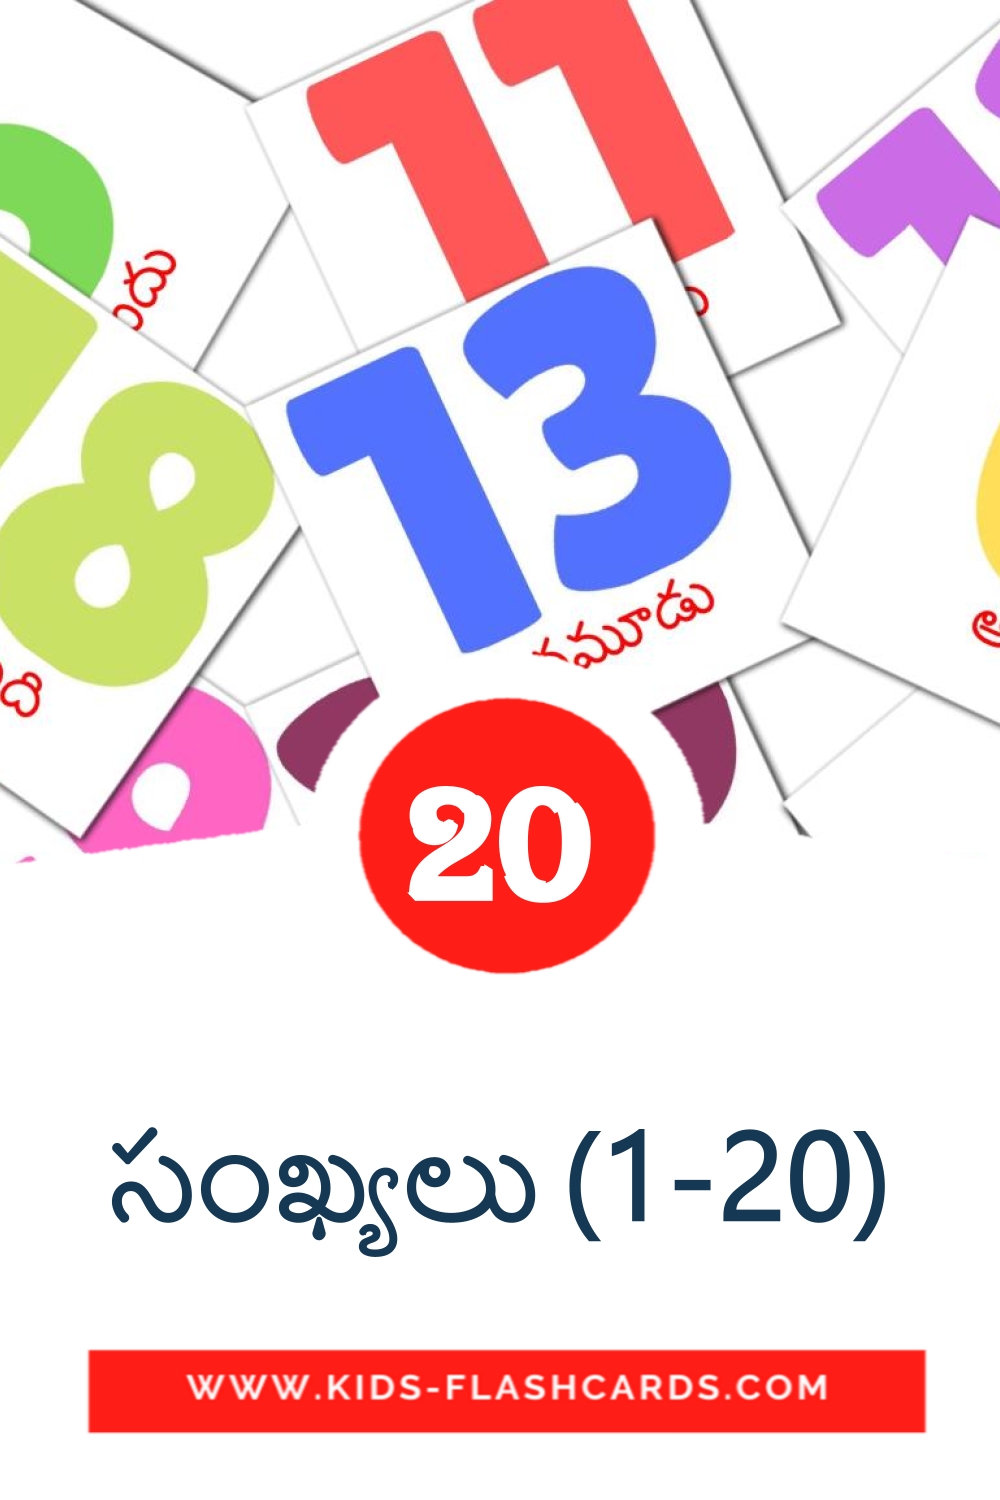 20 tarjetas didacticas de సంఖ్యలు (1-20) para el jardín de infancia en telugu